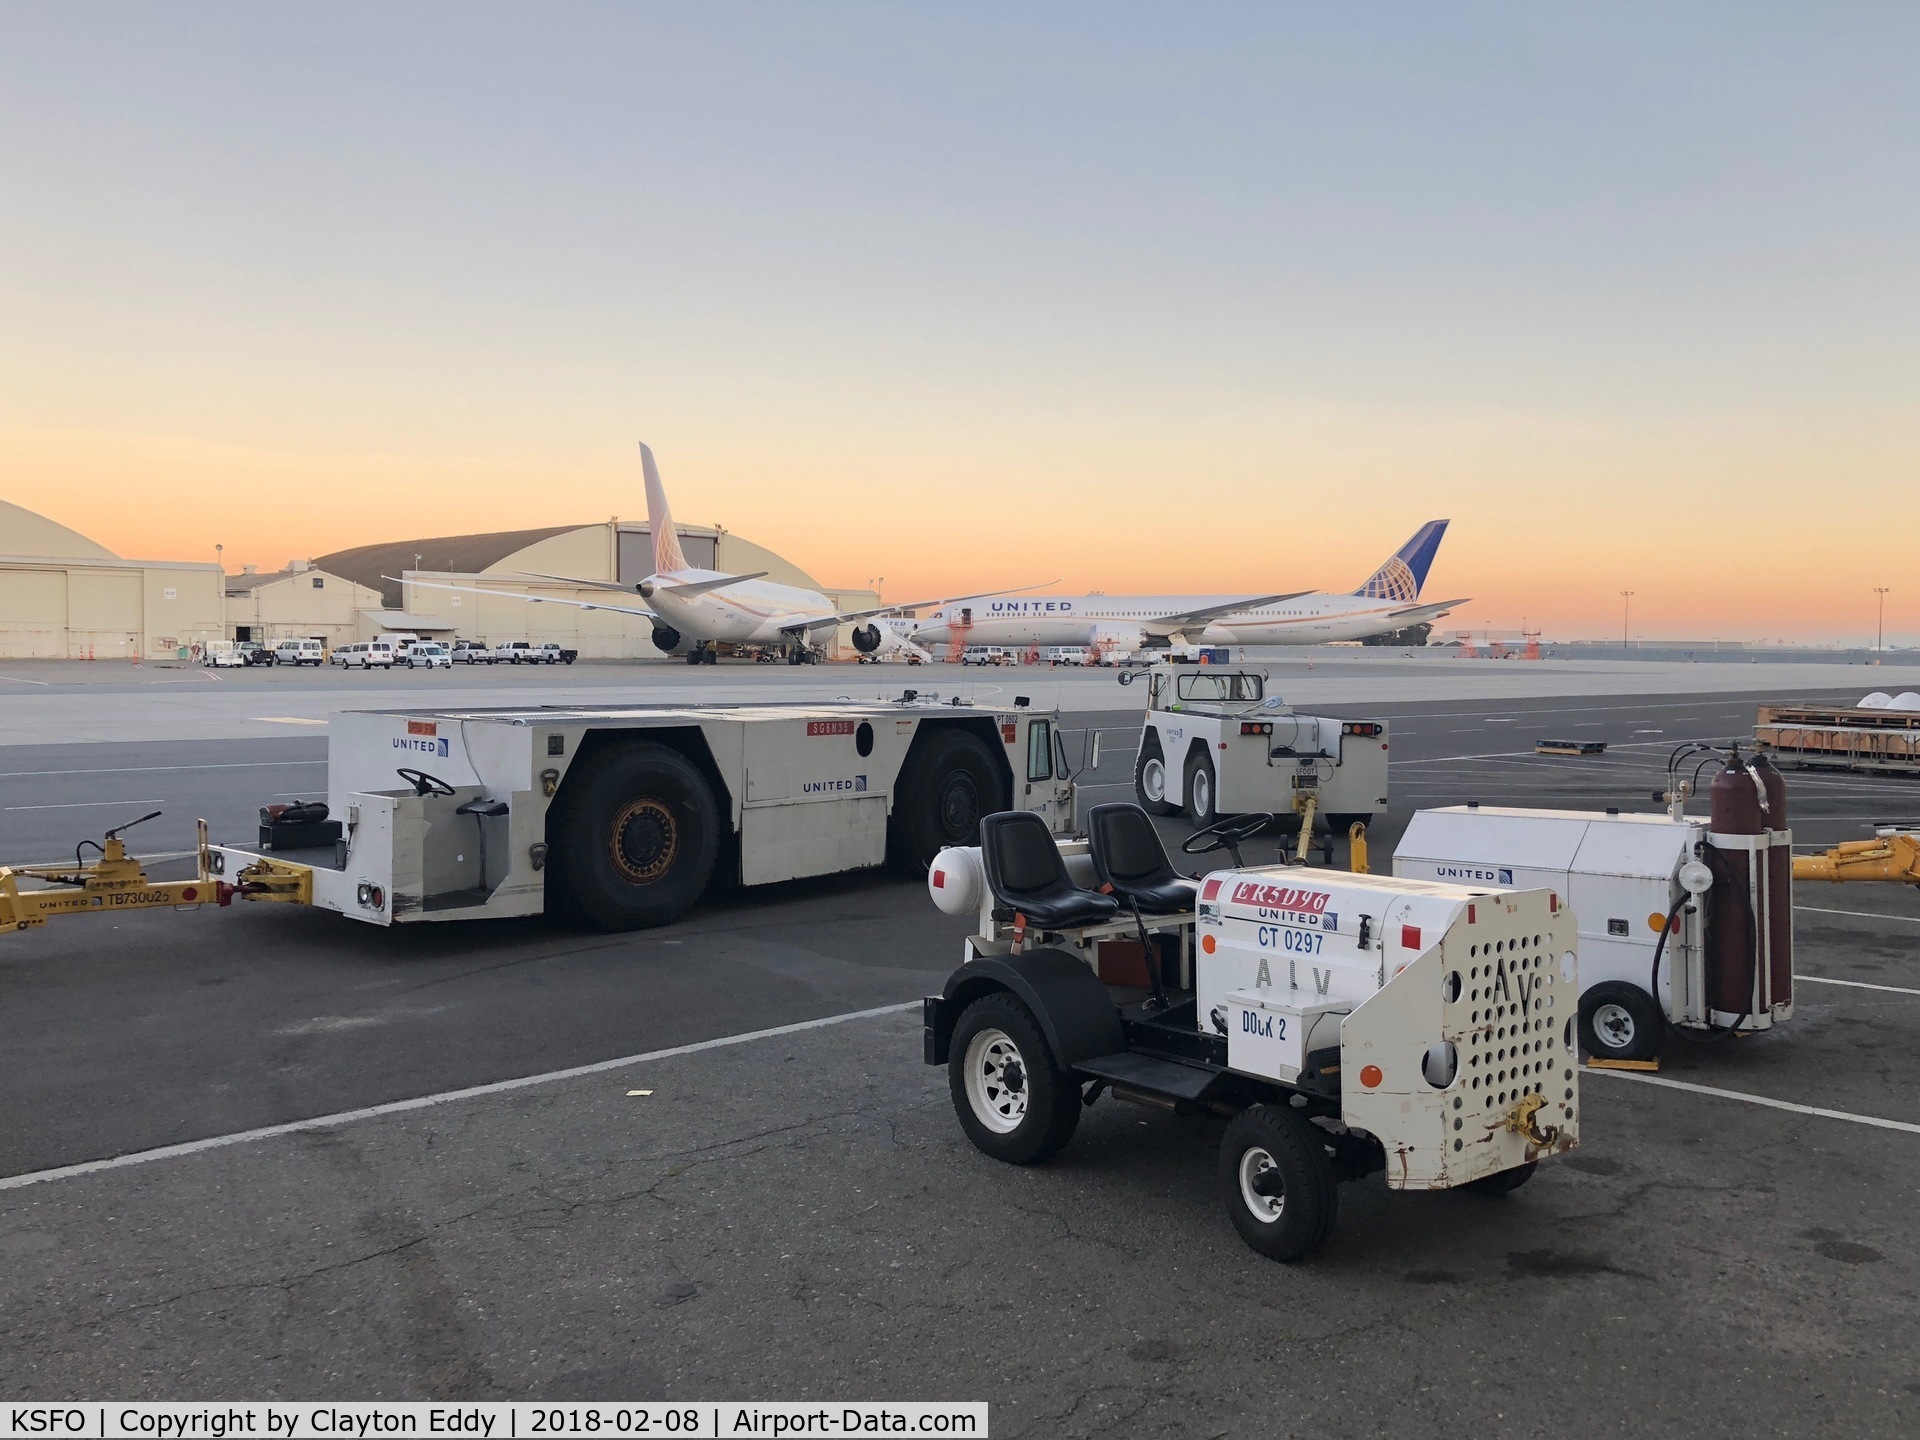 San Francisco International Airport (SFO) - Aircraft tugs at San Francisco Airport. 2018.